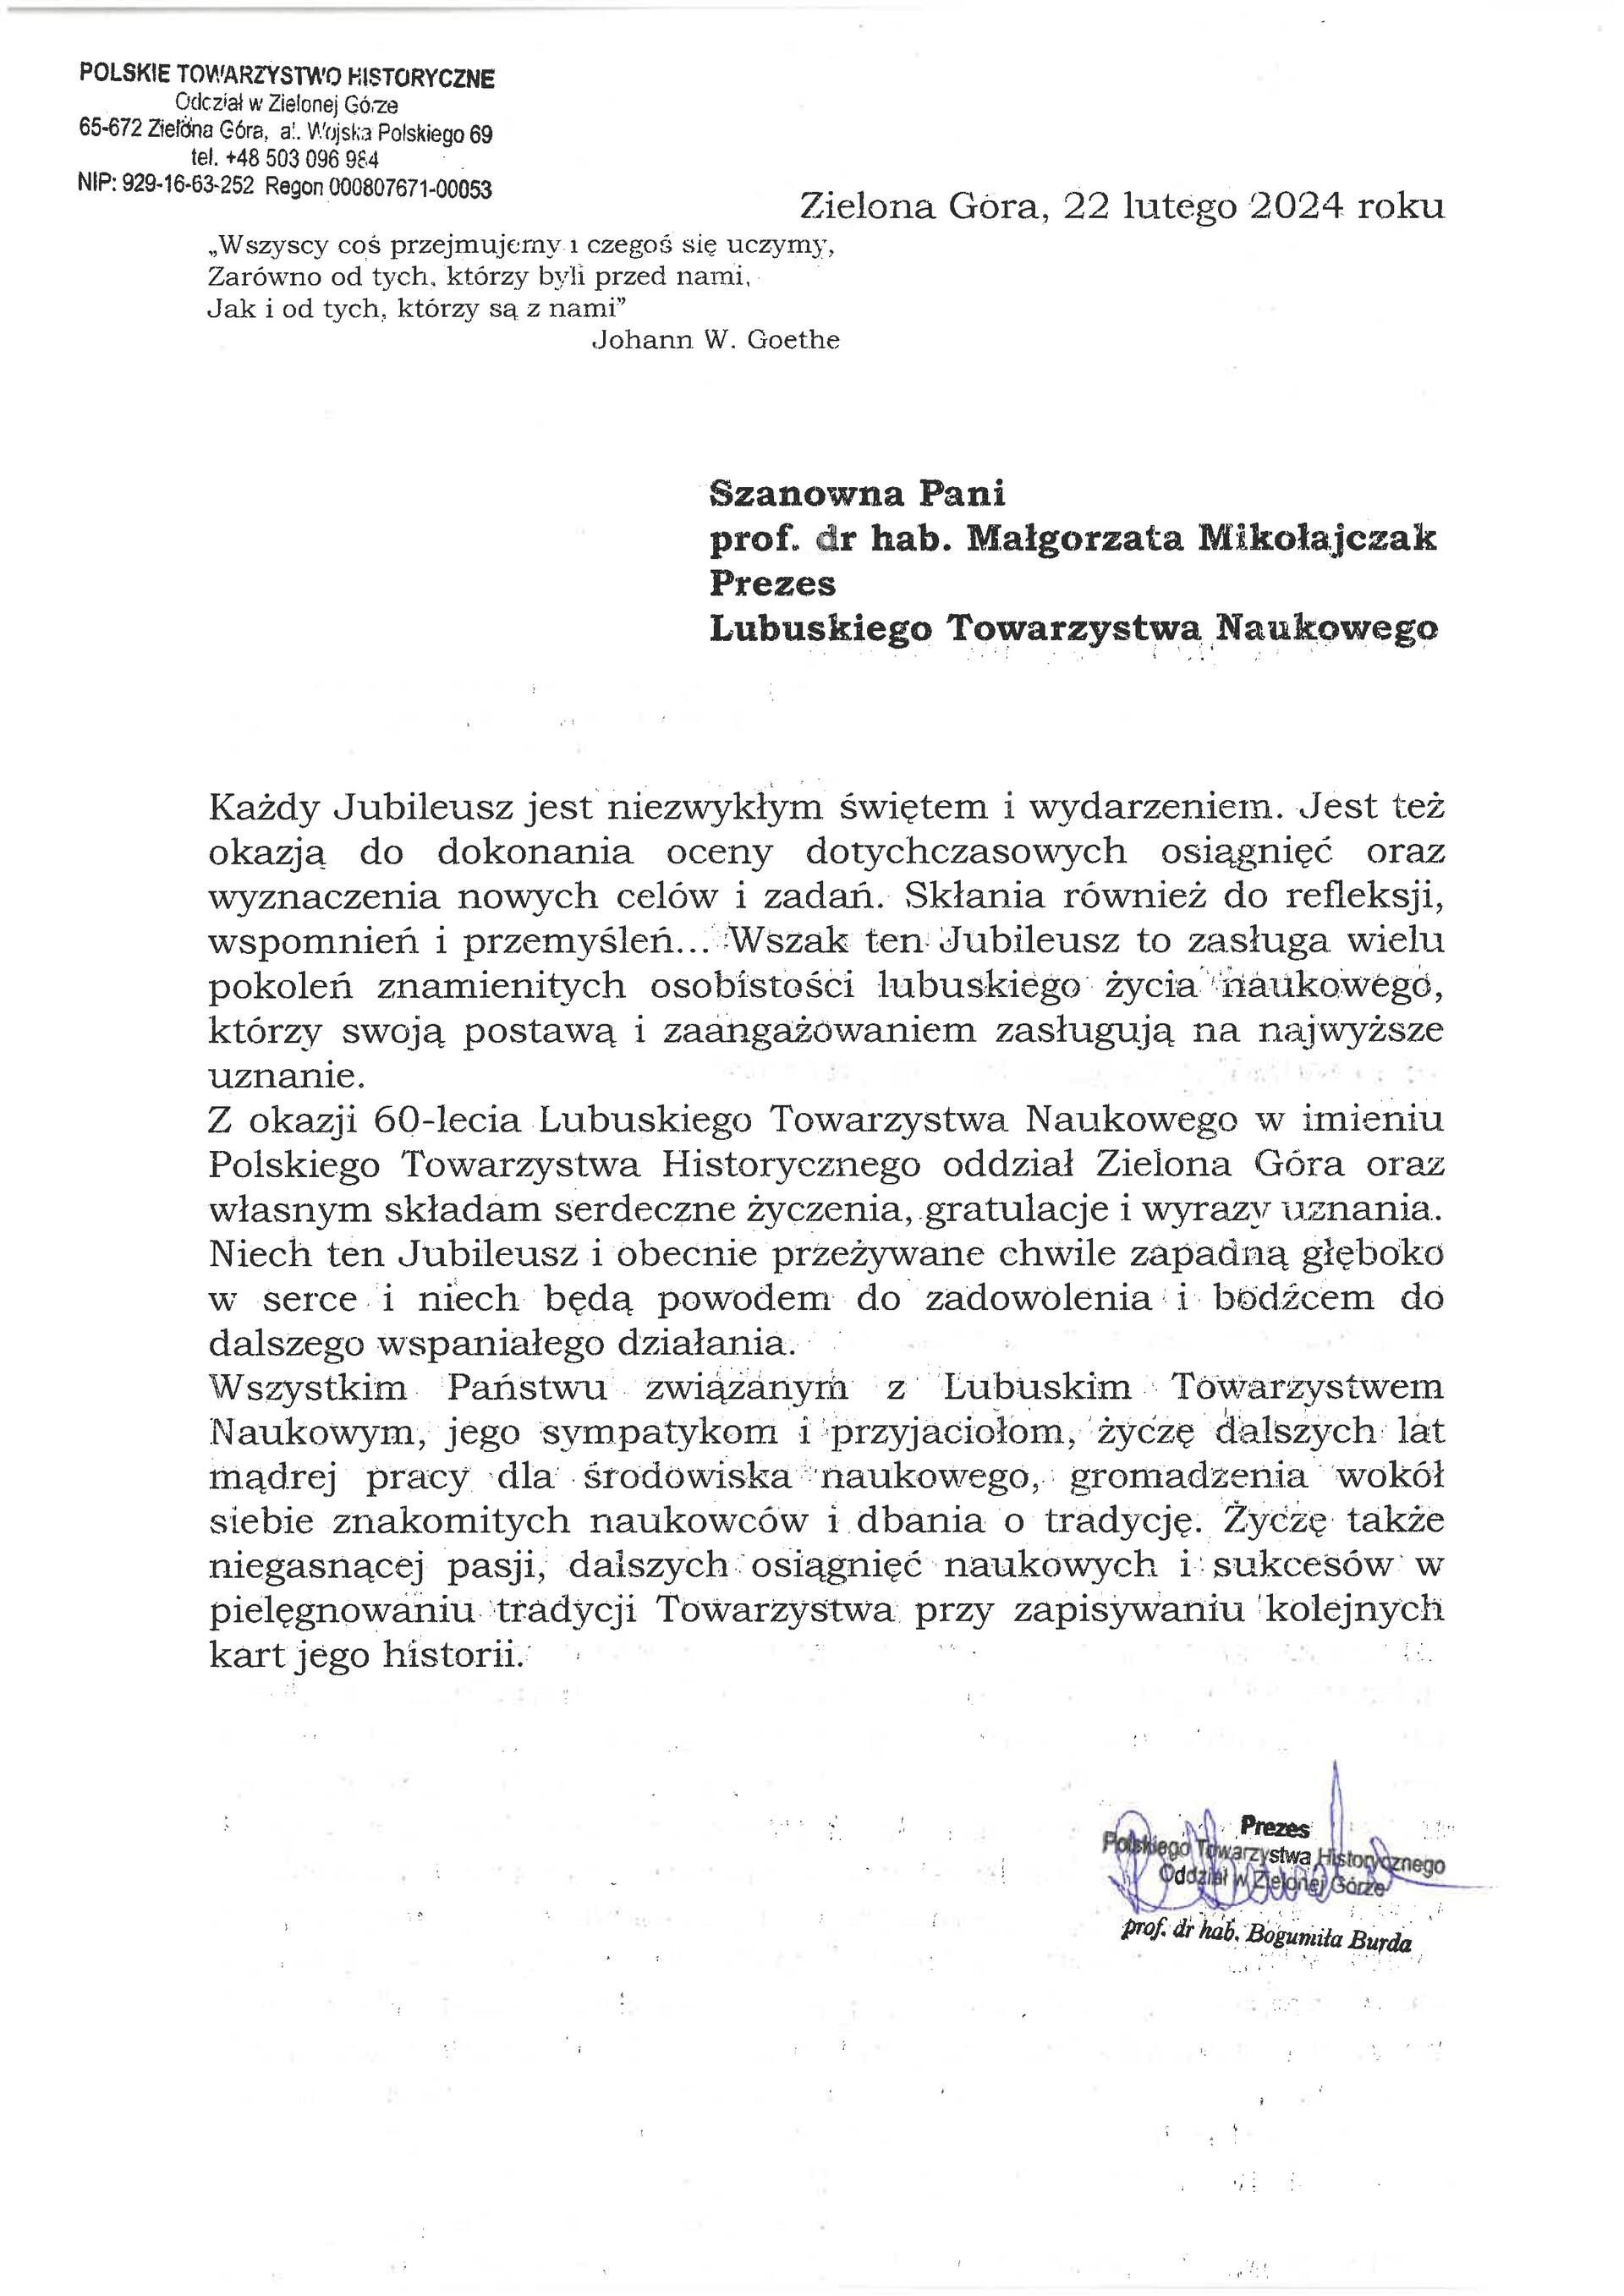 list_polskie_towarzystwo_historyczne.jpg